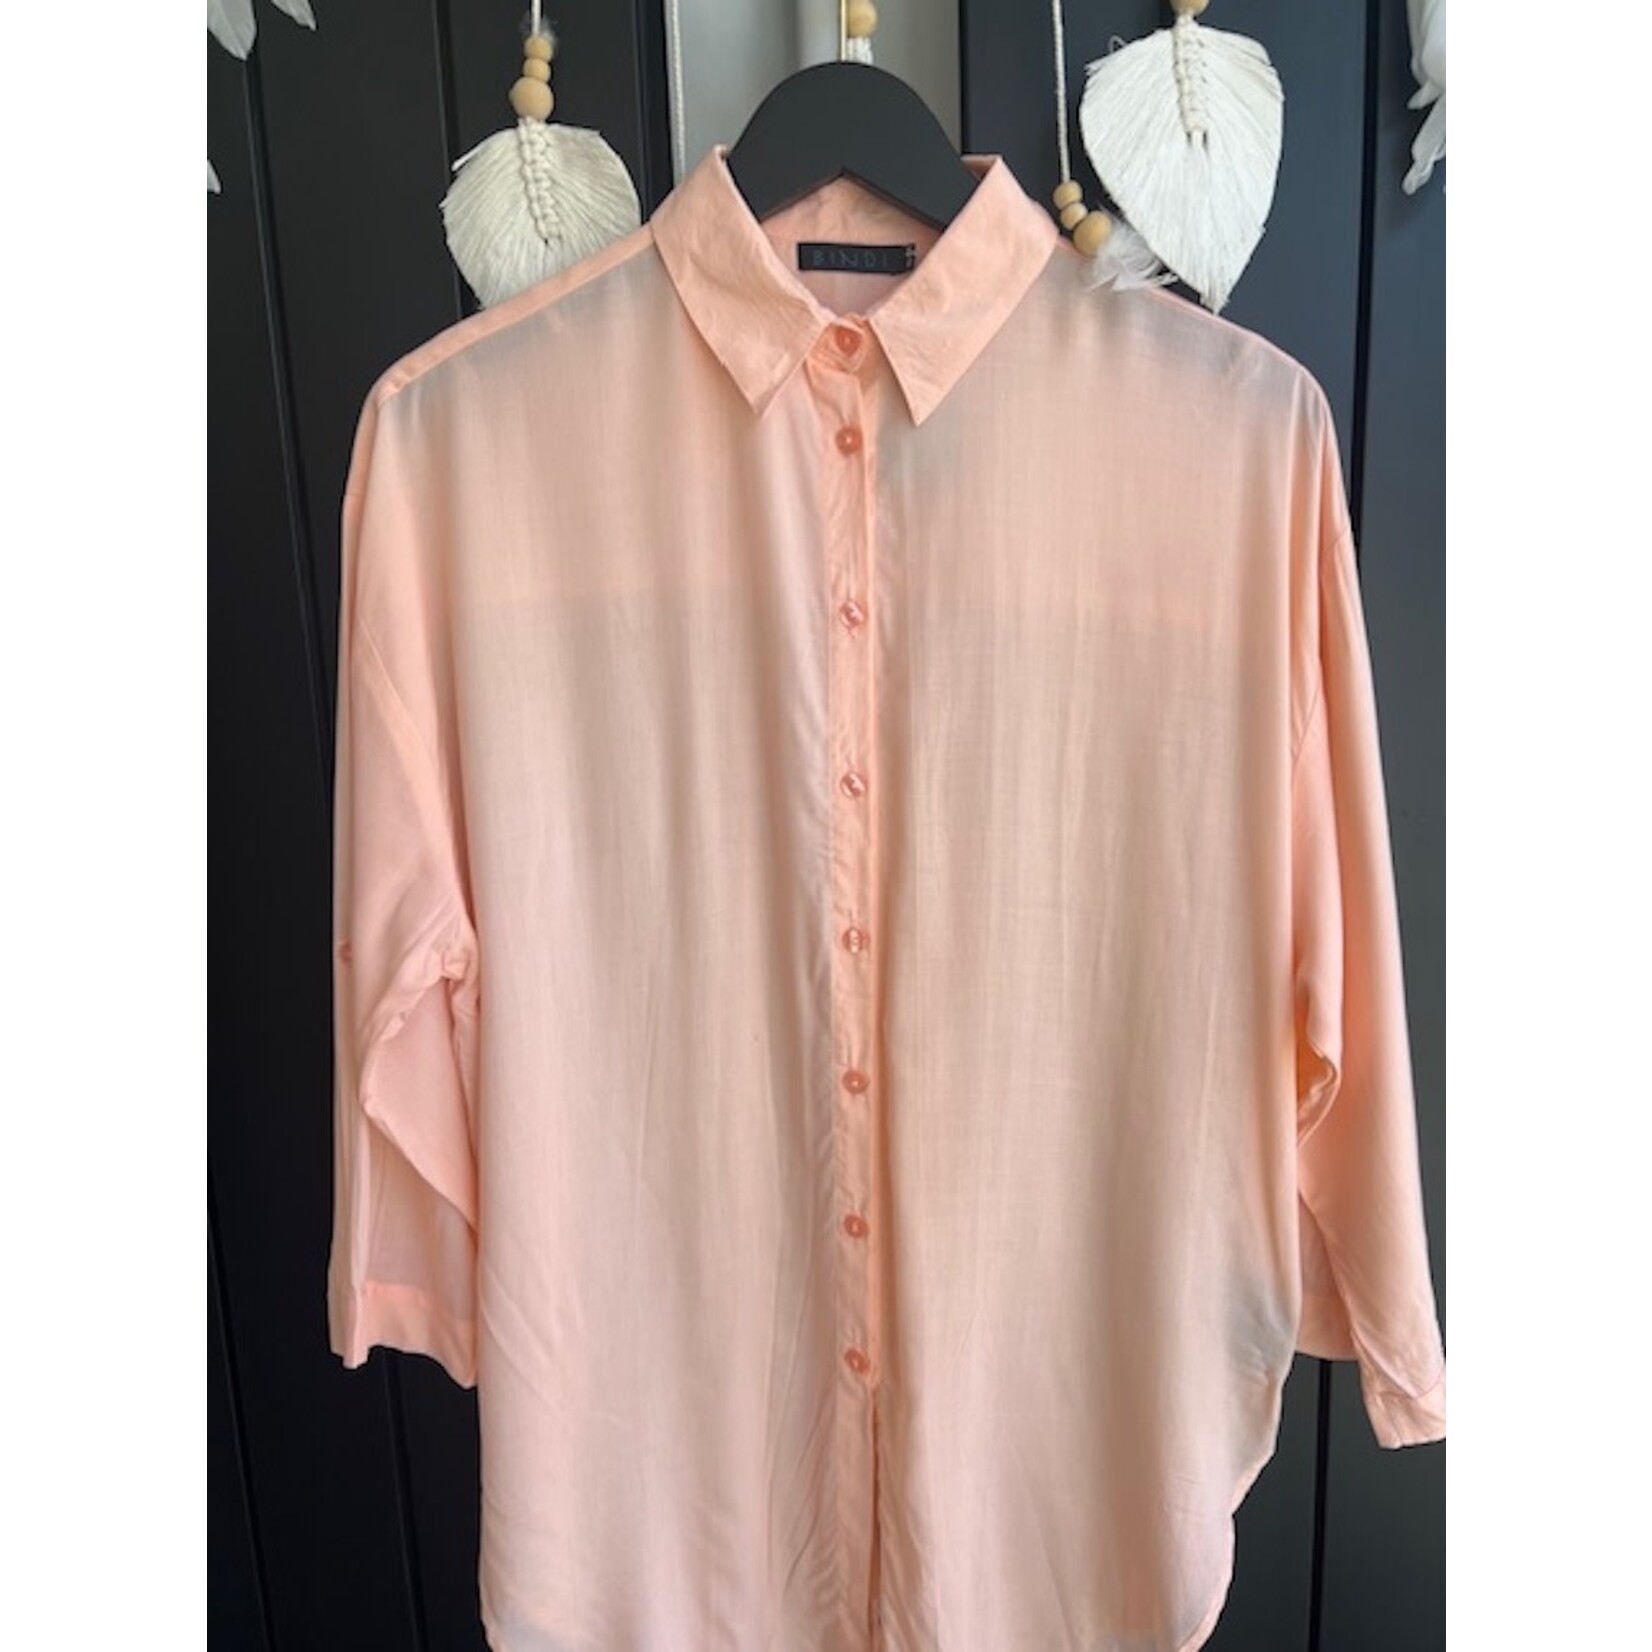 Bindi Bindi bs4-491 flamingo blouse